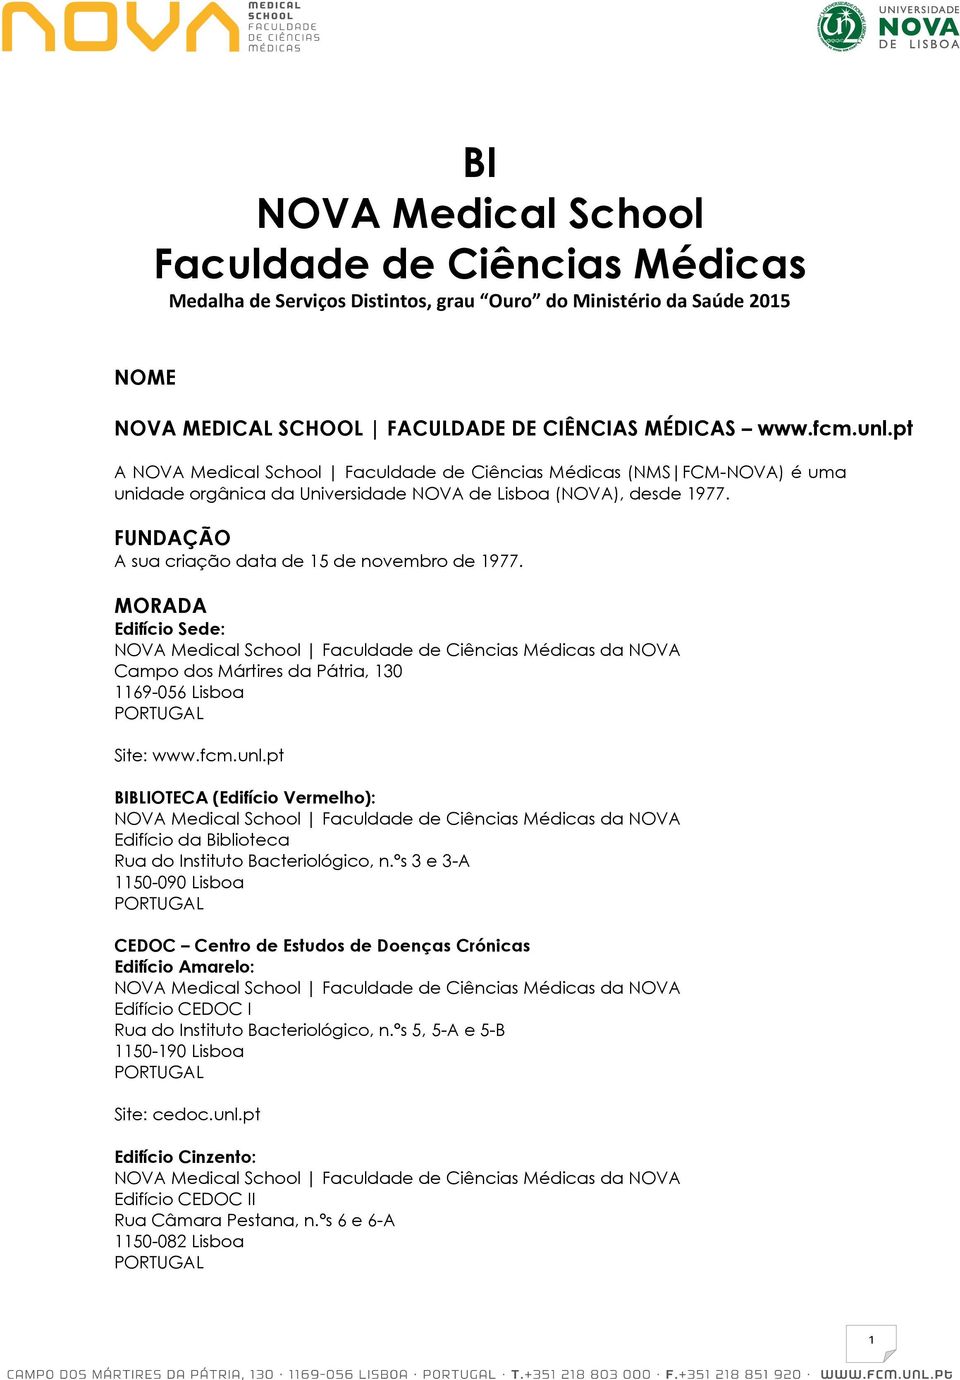 MORADA Edifício Sede: NOVA Medical School Faculdade de Ciências Médicas da NOVA Campo dos Mártires da Pátria, 130 1169-056 Lisboa PORTUGAL Site: www.fcm.unl.